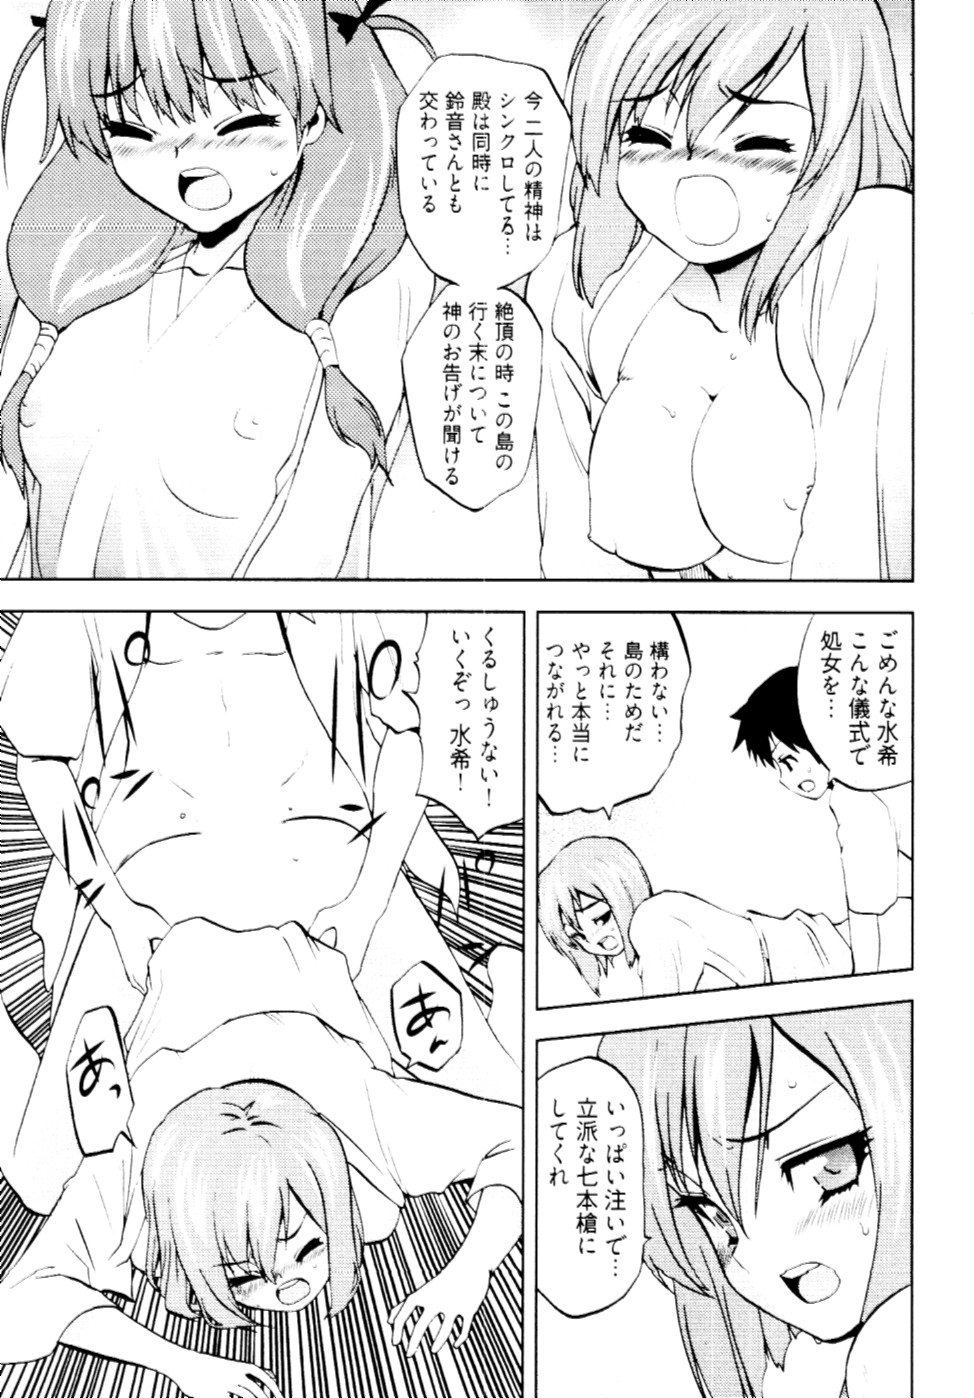 [Togami Shin] Tonosama no Nanahon yari Vol.2 page 12 full